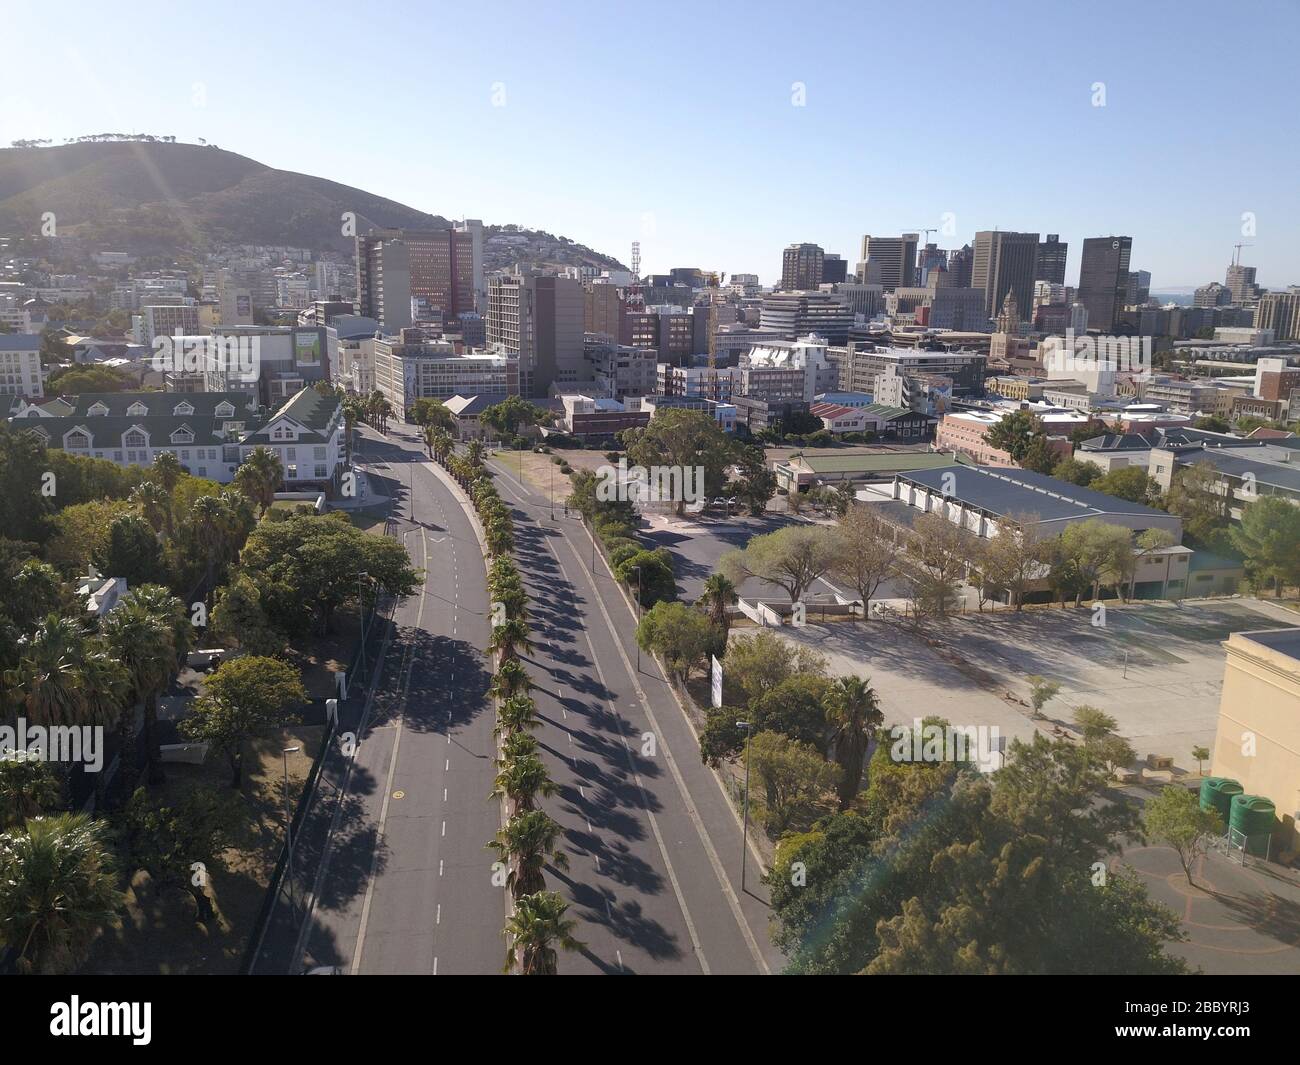 2 avril 2020 - le Cap, Afrique du Sud : vue aérienne des rues vides du Cap, Afrique du Sud pendant le verrouillage du Covid 19. Banque D'Images